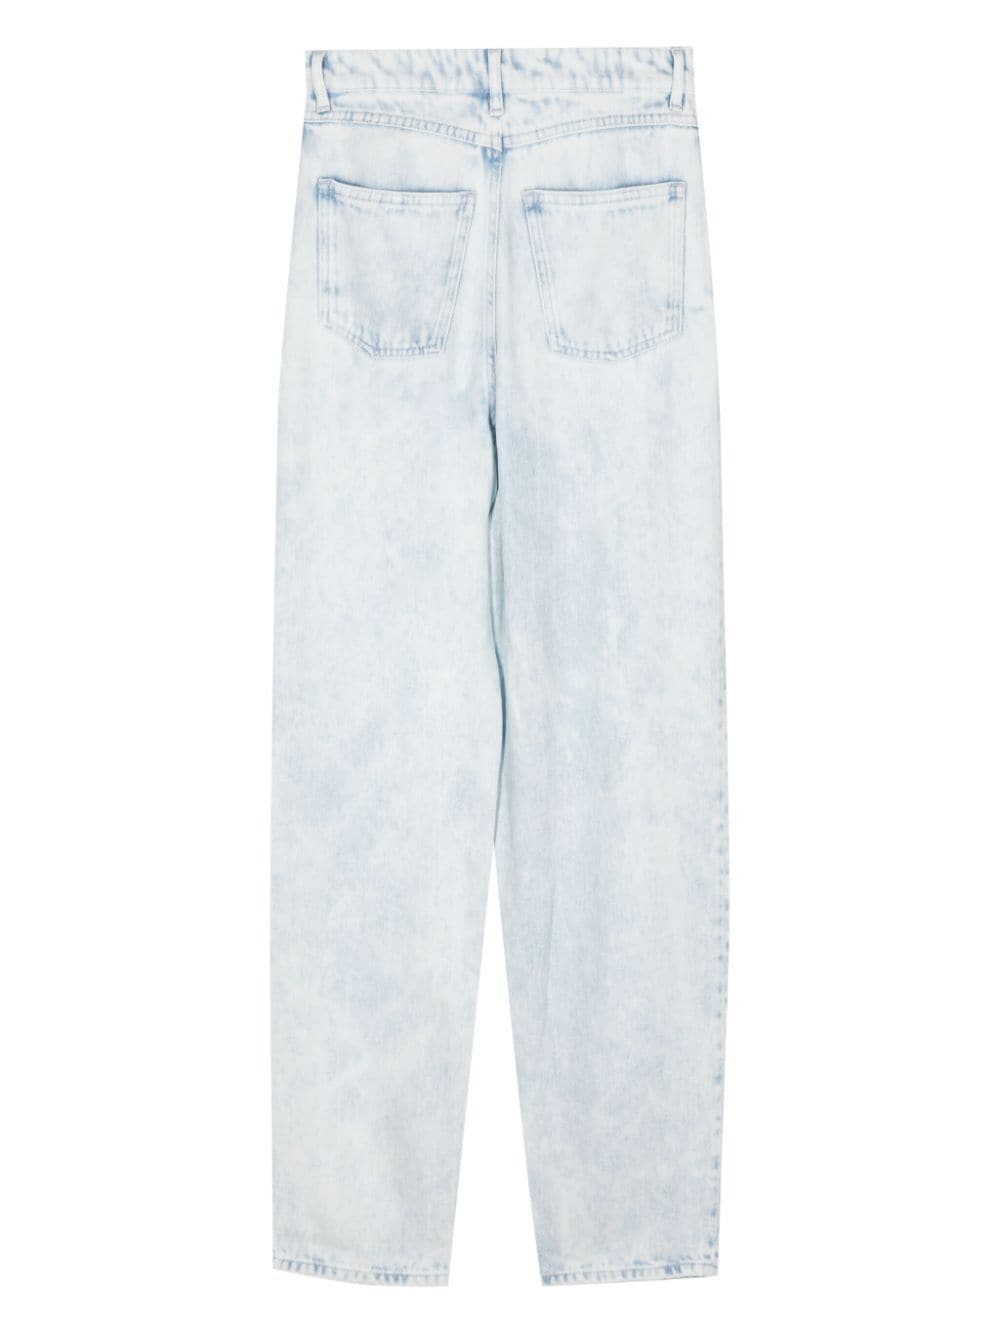 IRO Elide jeans met vervaagd effect - Blauw